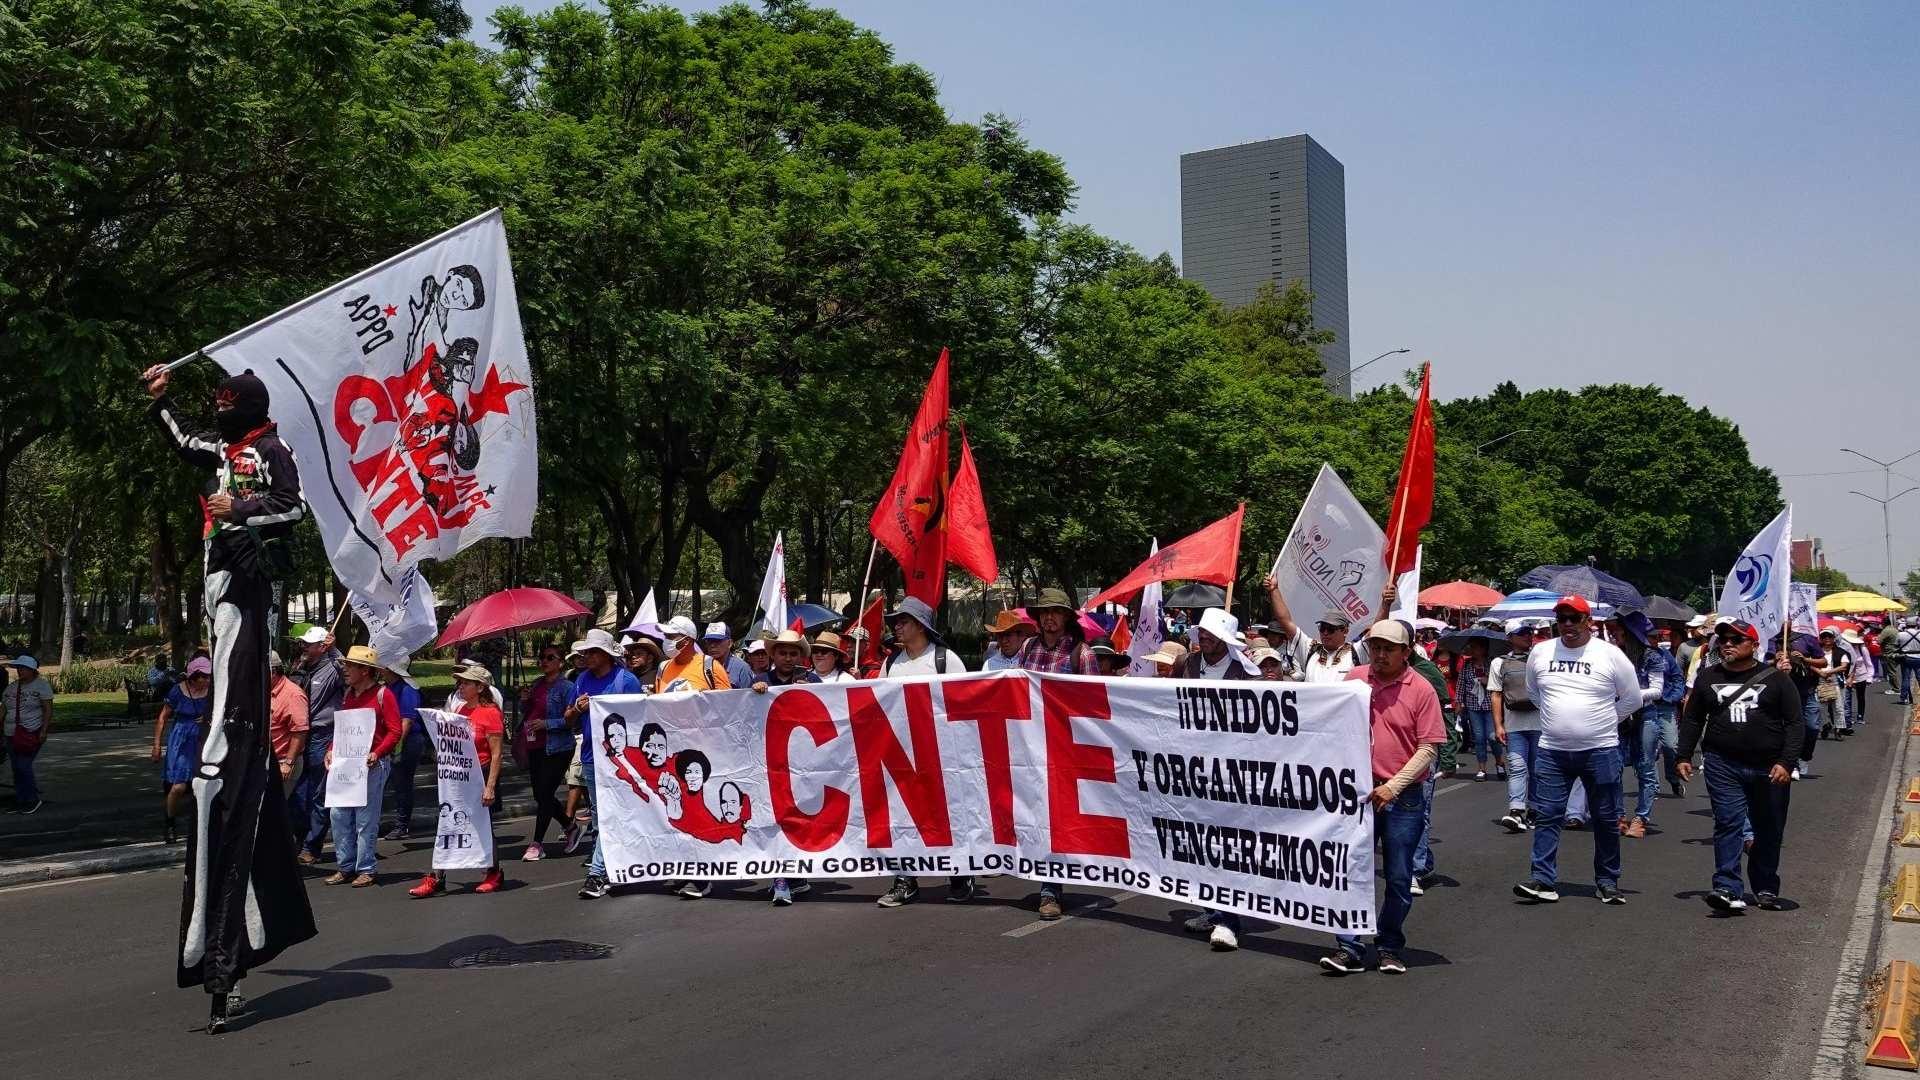 CNTE Rechaza Propuesta de Aumento de AMLO y Continuará Manifestaciones